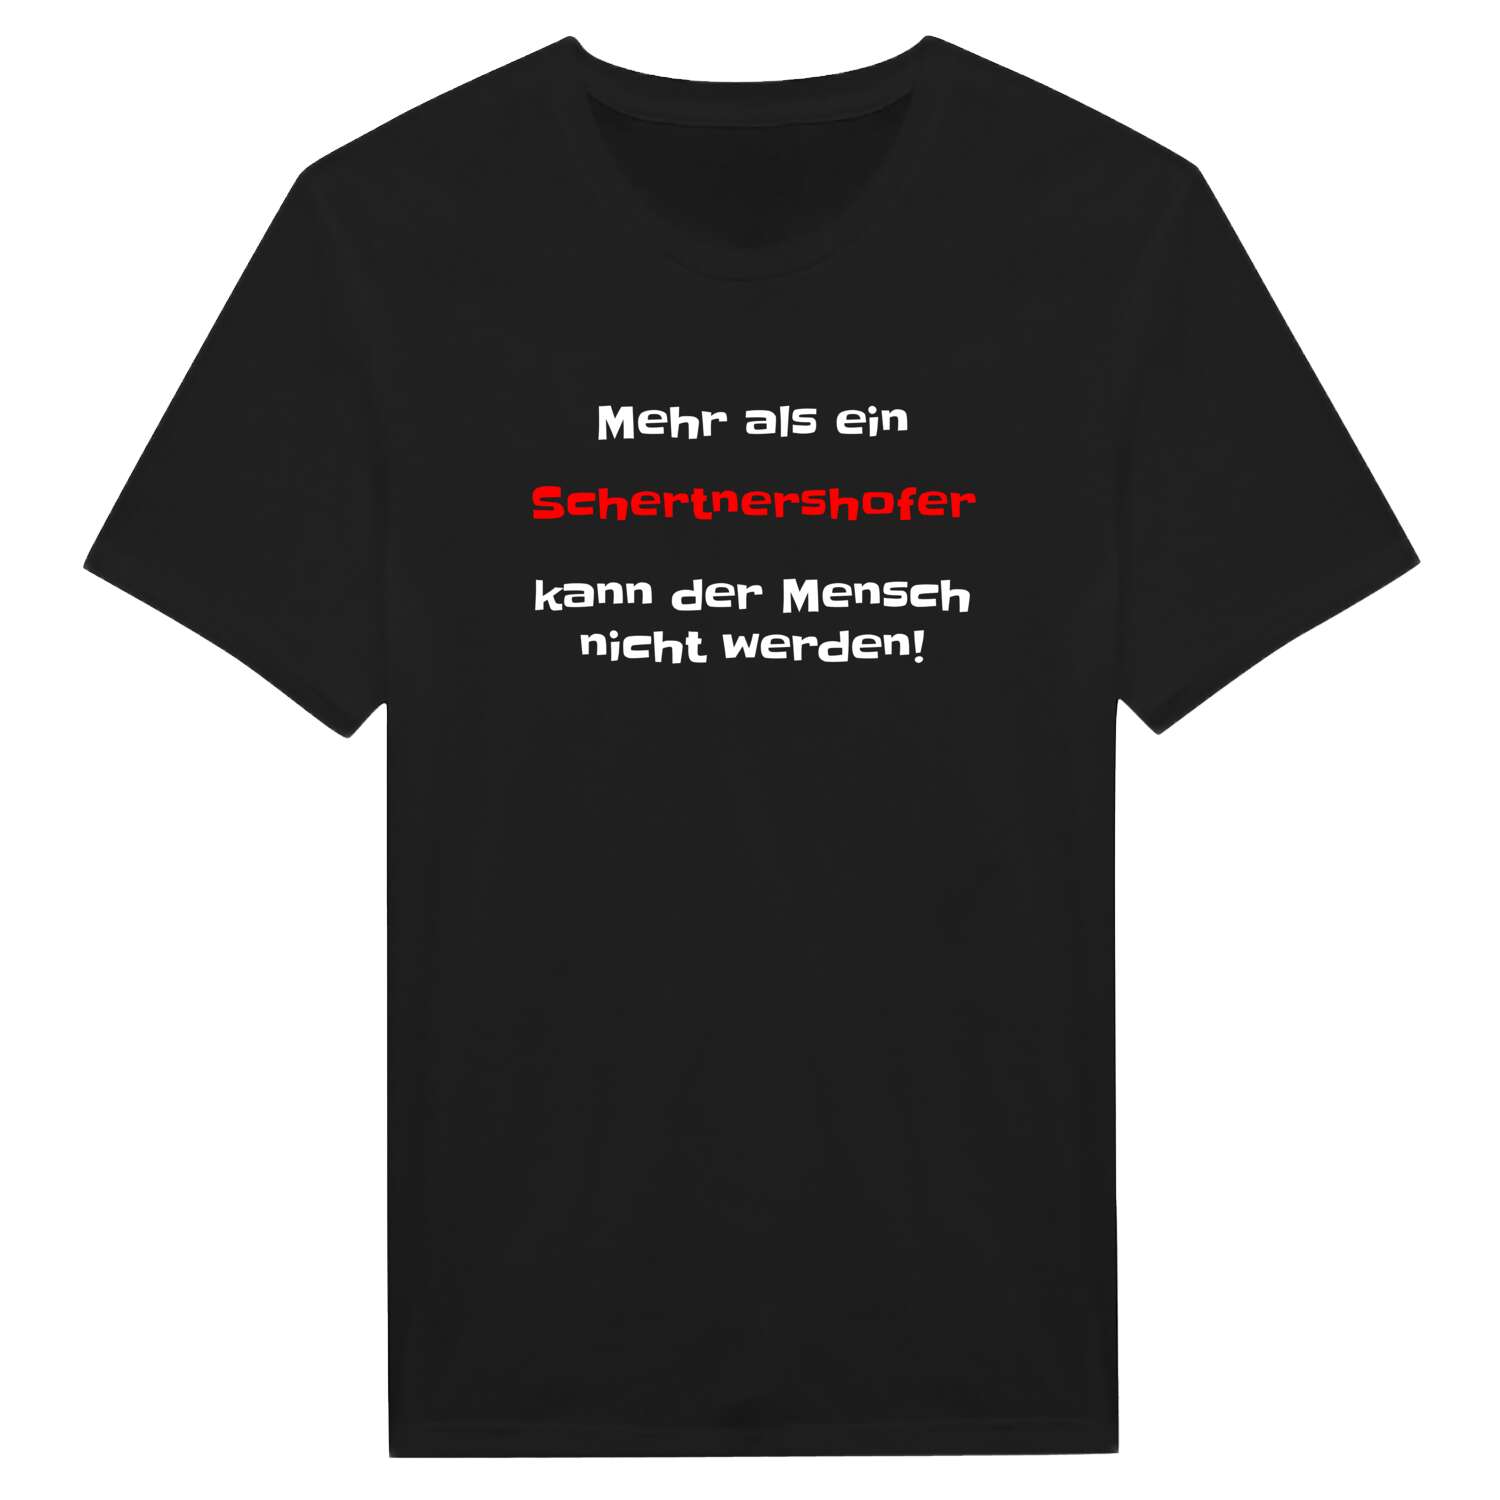 Schertnershof T-Shirt »Mehr als ein«